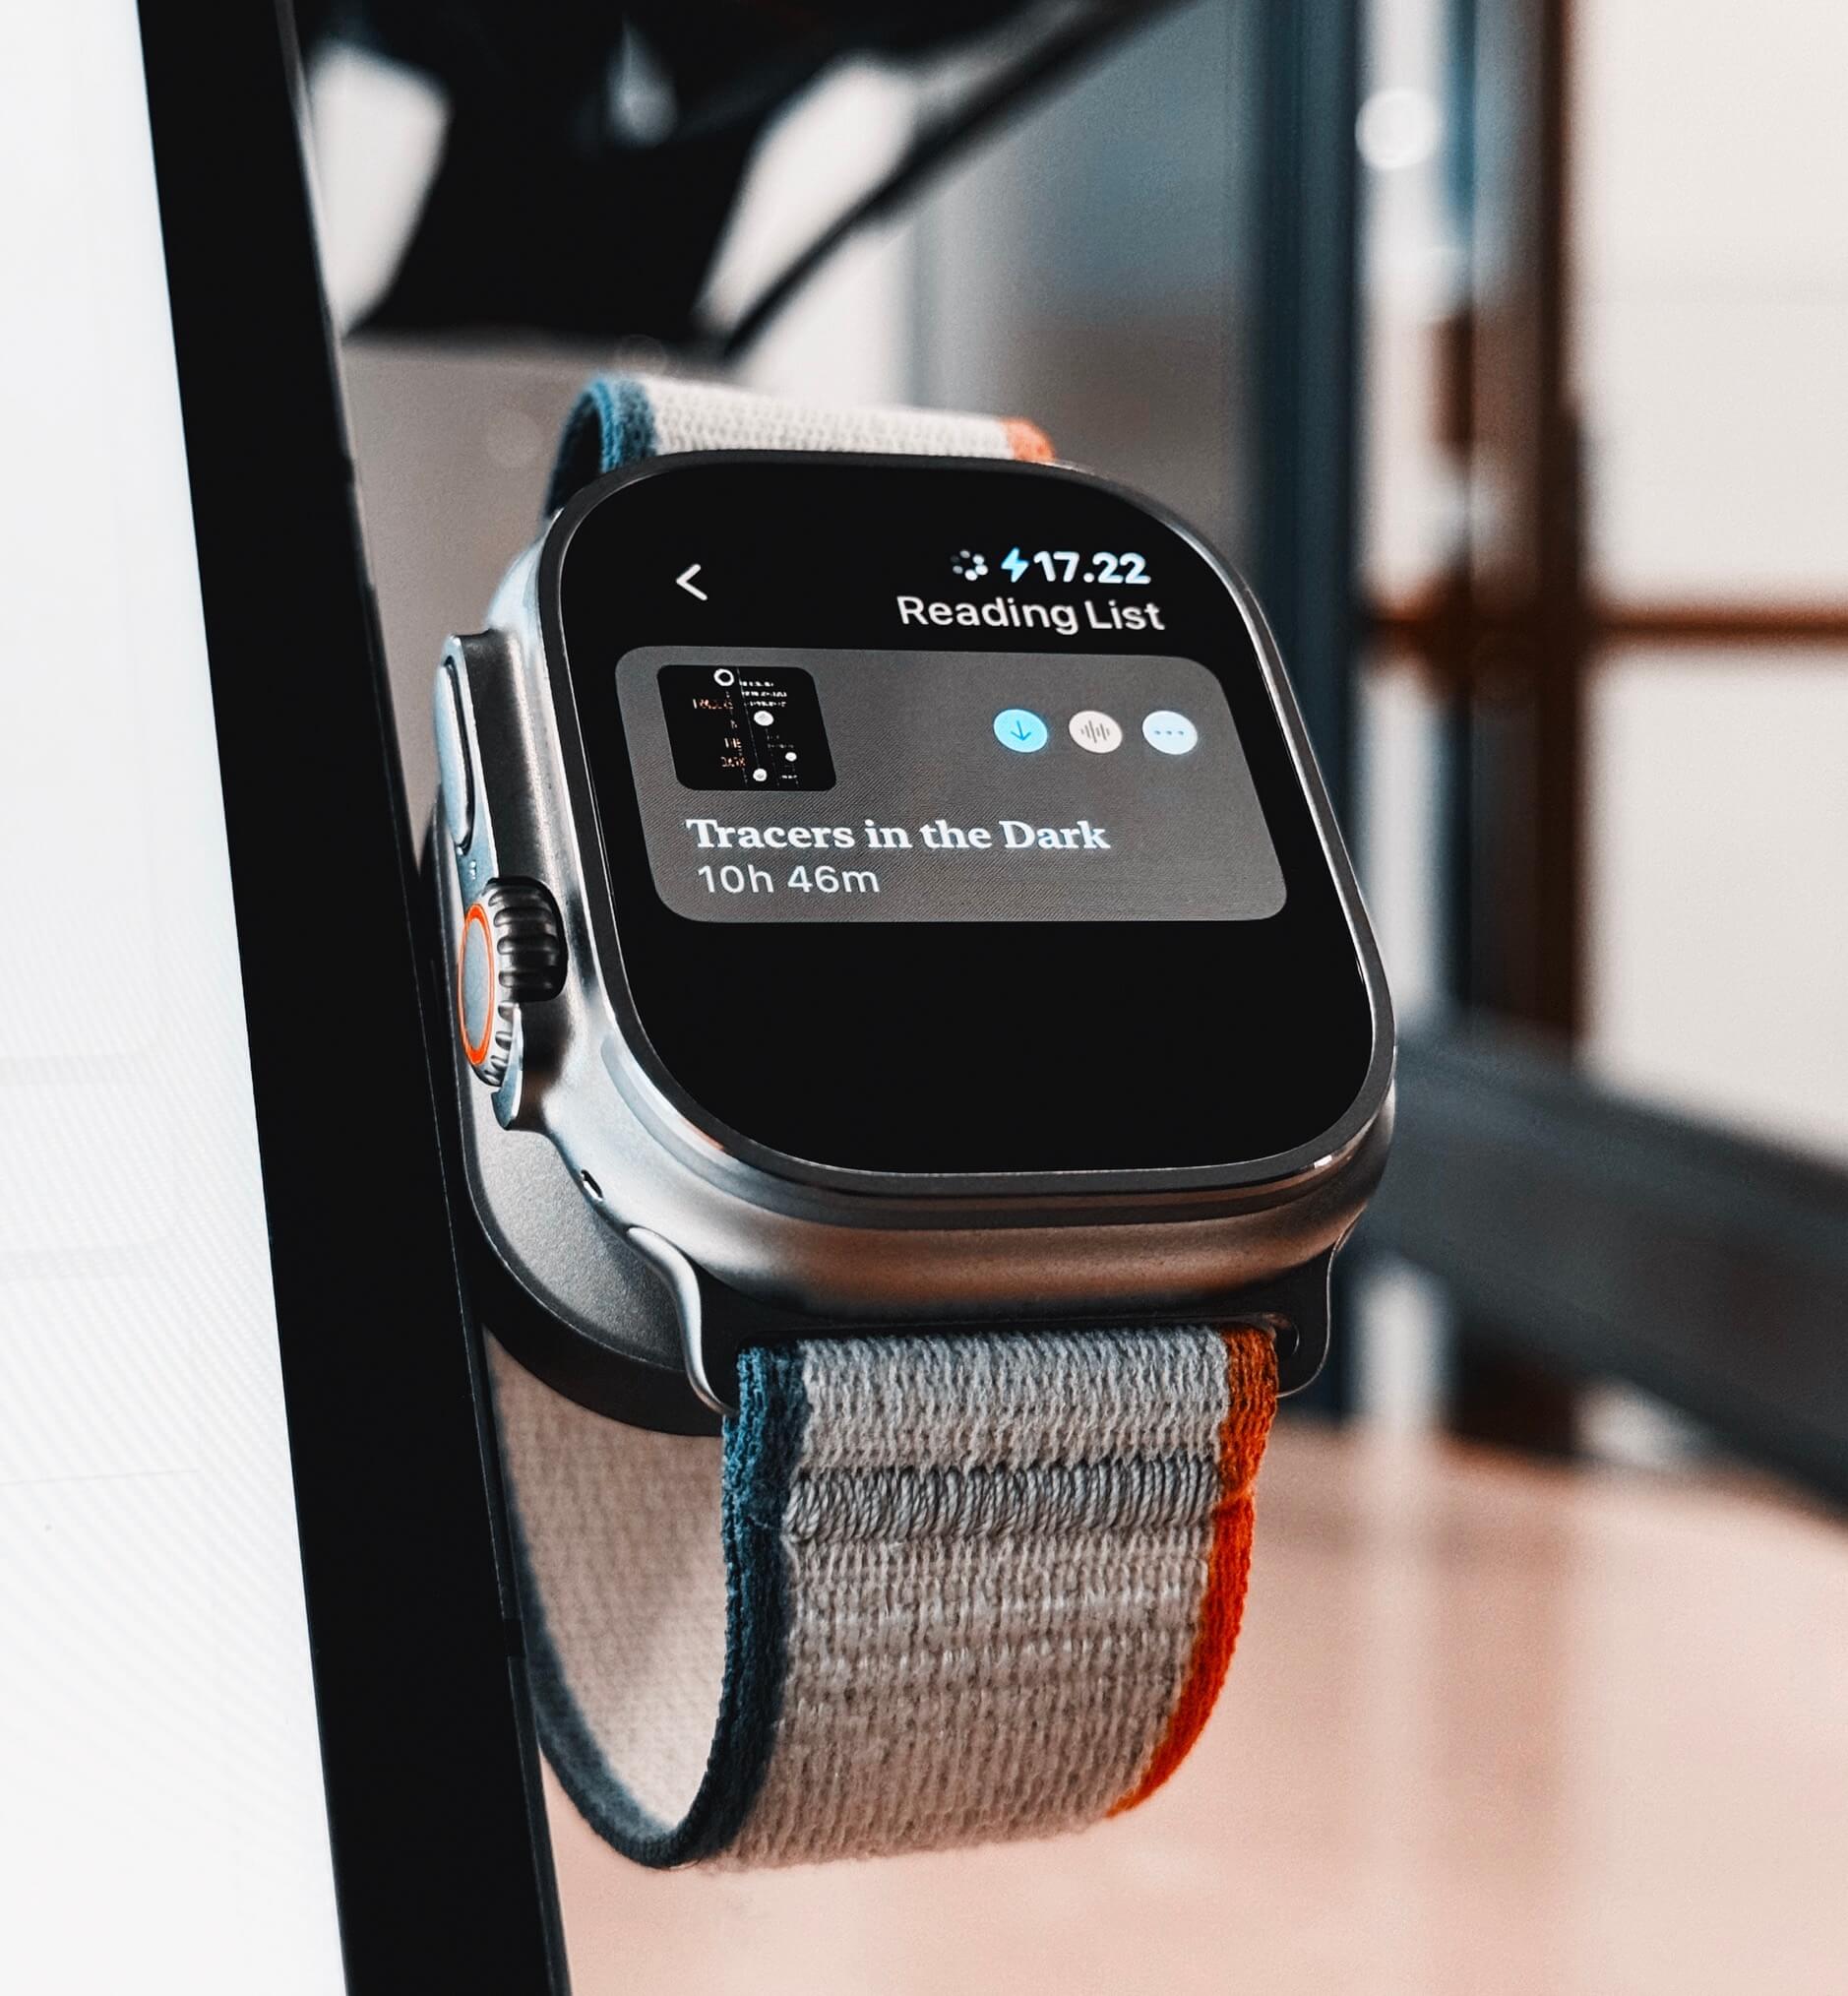 Das ist einer Apple Watch Ultra, die eine Leseliste mit dem Titel "Tracers in the Dark" und einer verbleibenden Lesezeit von 10 Stunden und 46 Minuten anzeigt. Das Uhrarmband hat farbige Streifen in Blau, Grau und Orange.